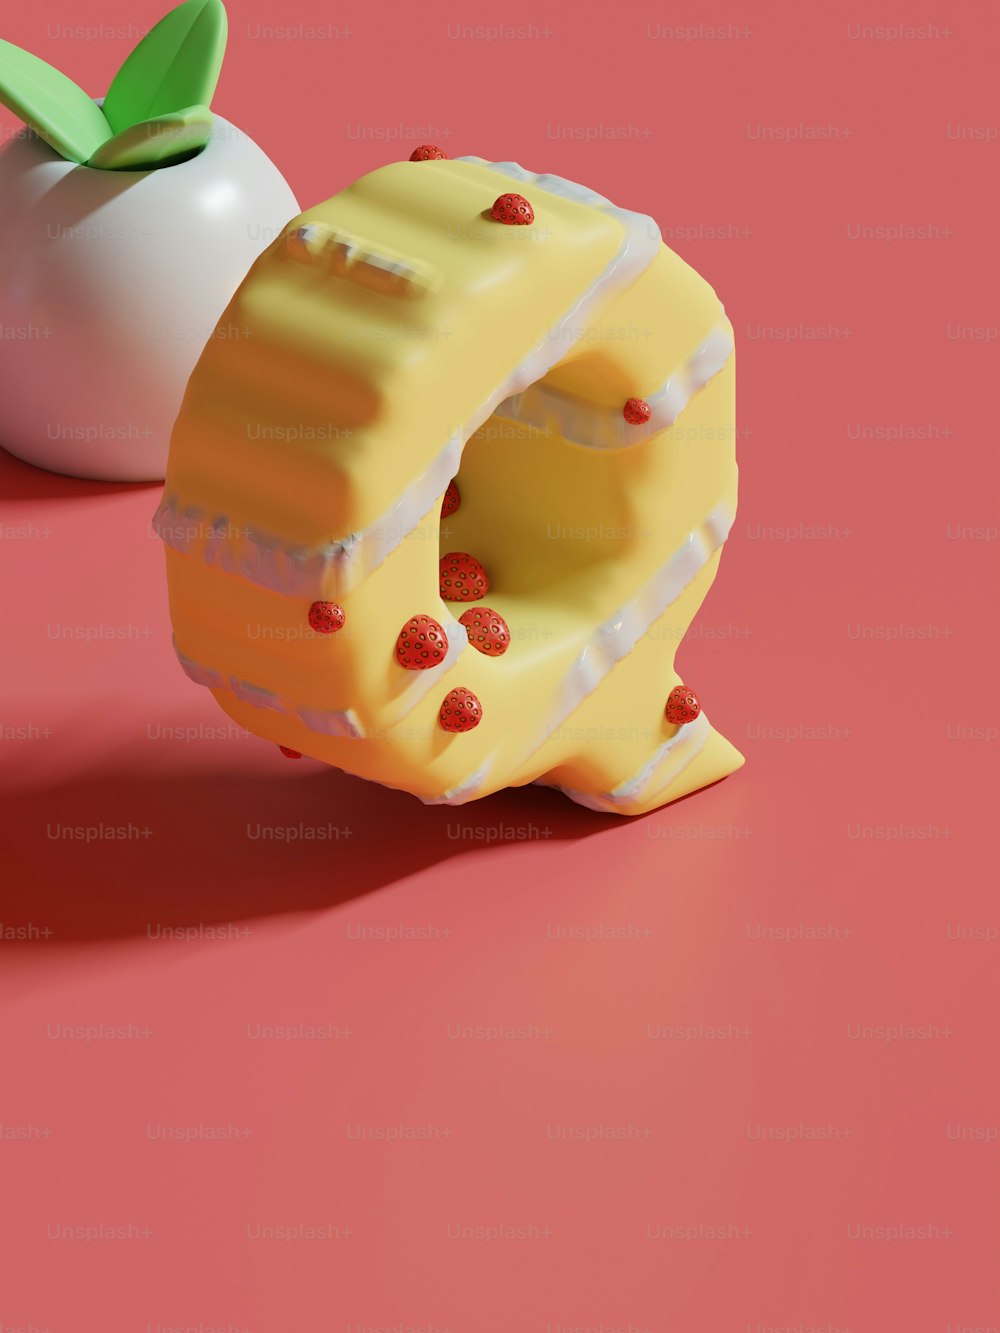 Ein Stück Kuchen neben einem Apfel auf einer rosa Oberfläche